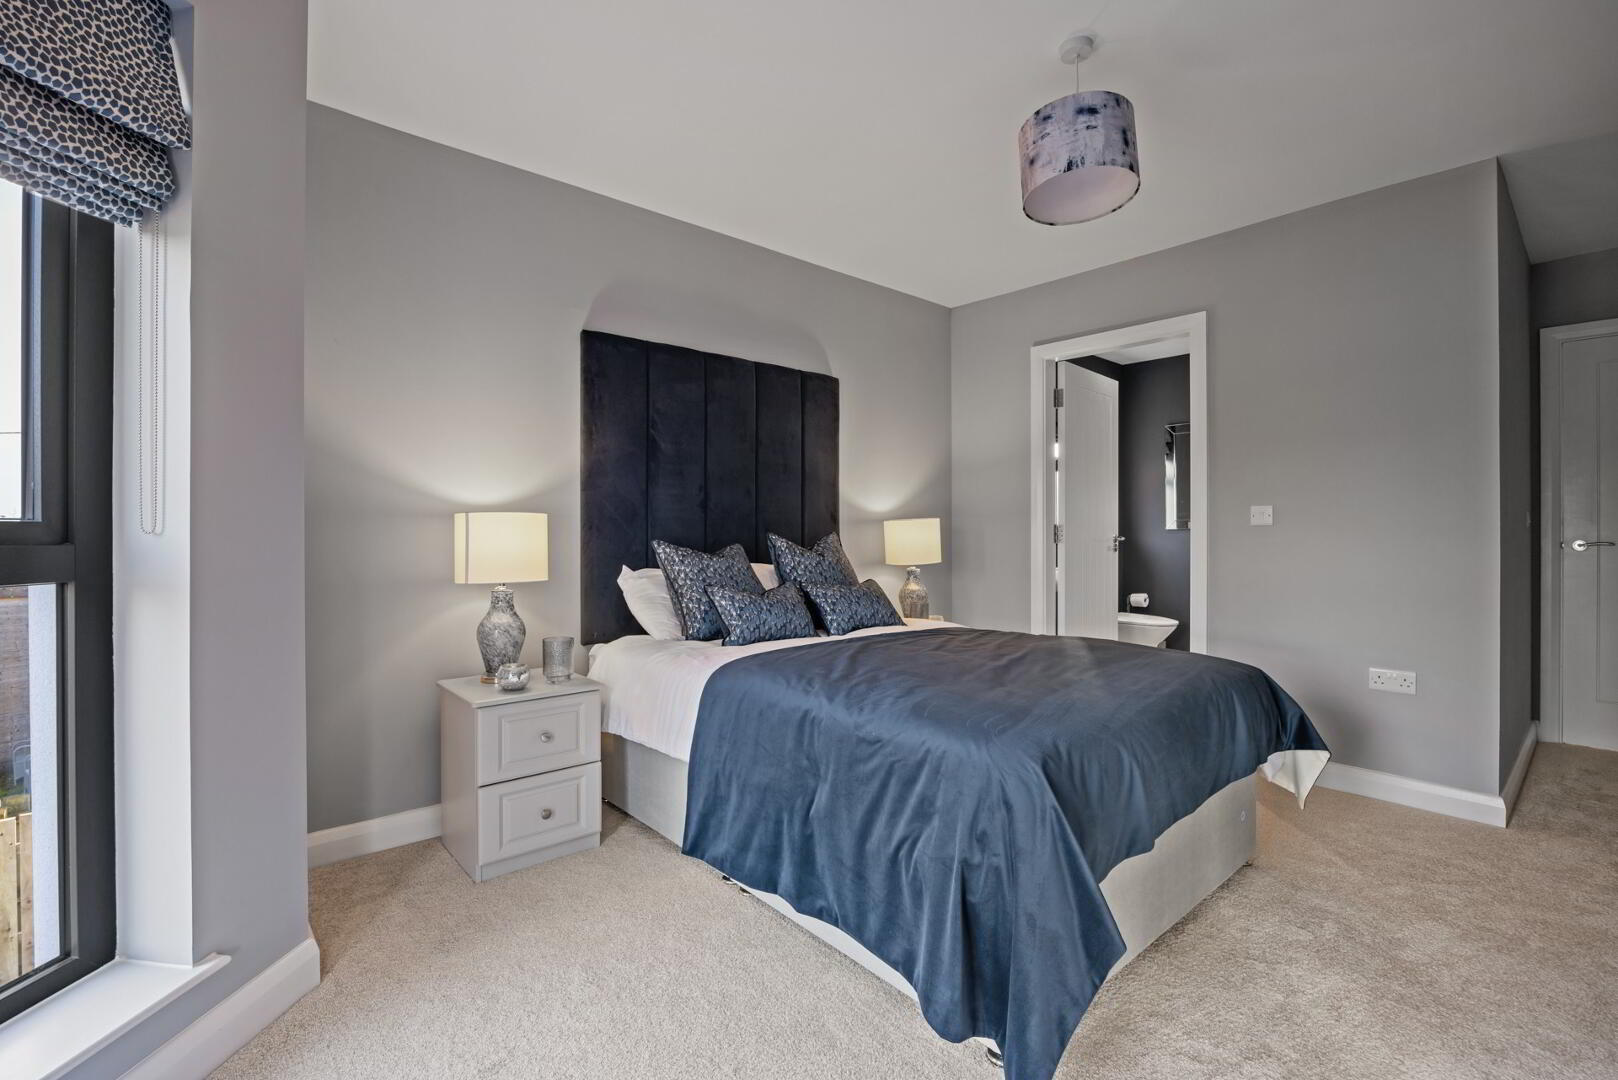 Bedroom Design Northern Ireland